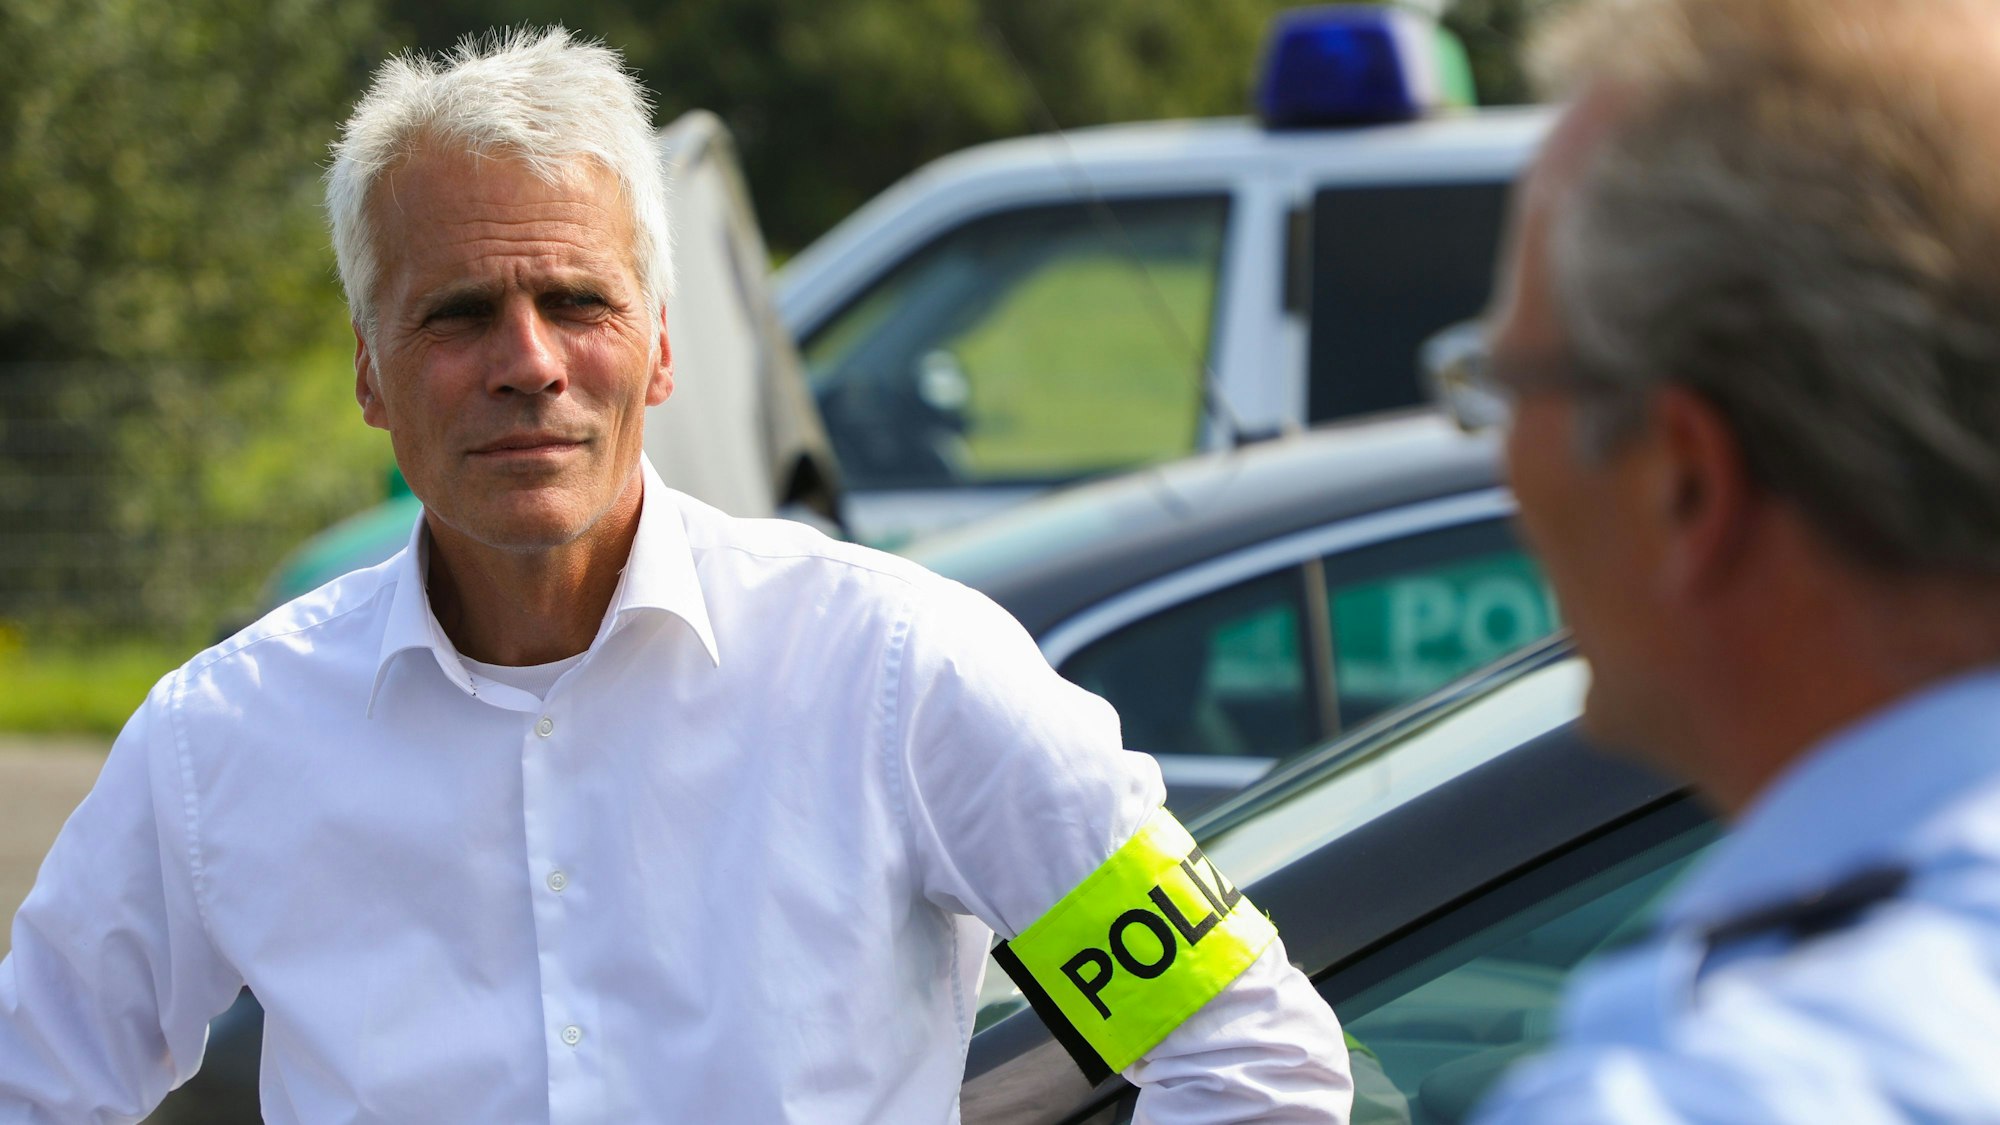 Dirk Weinspach ist bei einem Einsatz zu sehen. Er trägt ein weißes Hemd und eine neongelbe Polizei-Binde am Arm.